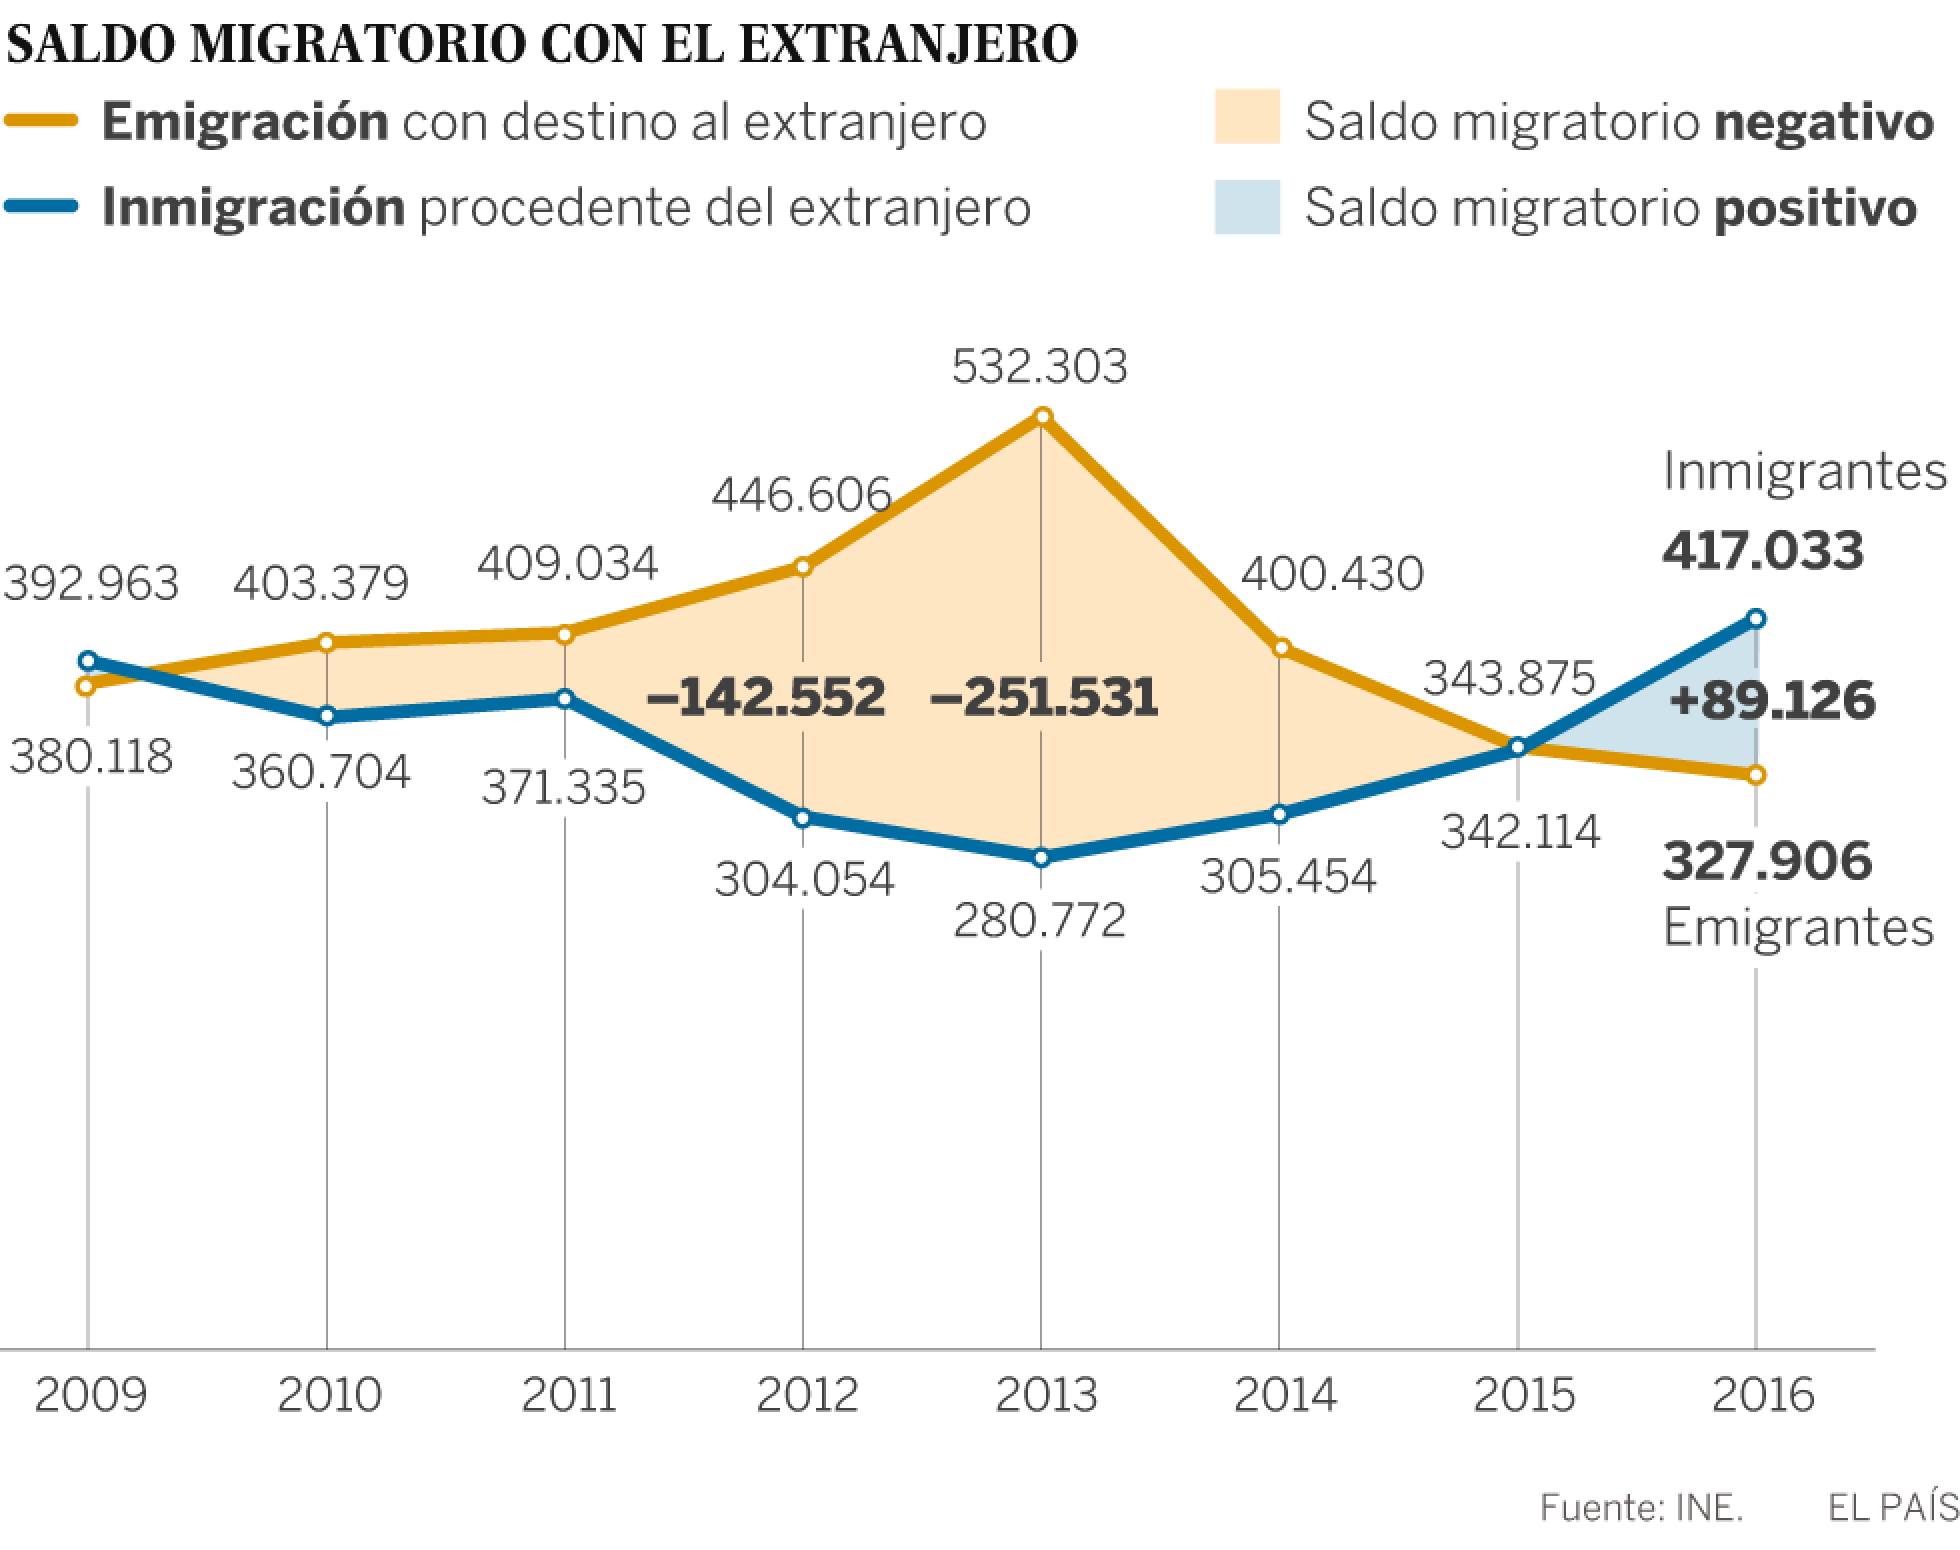 Demografía: Migraciones, emigrantes, inmigrantes en España. - Página 2 1498727829_862072_1498744111_sumario_normal_recorte1